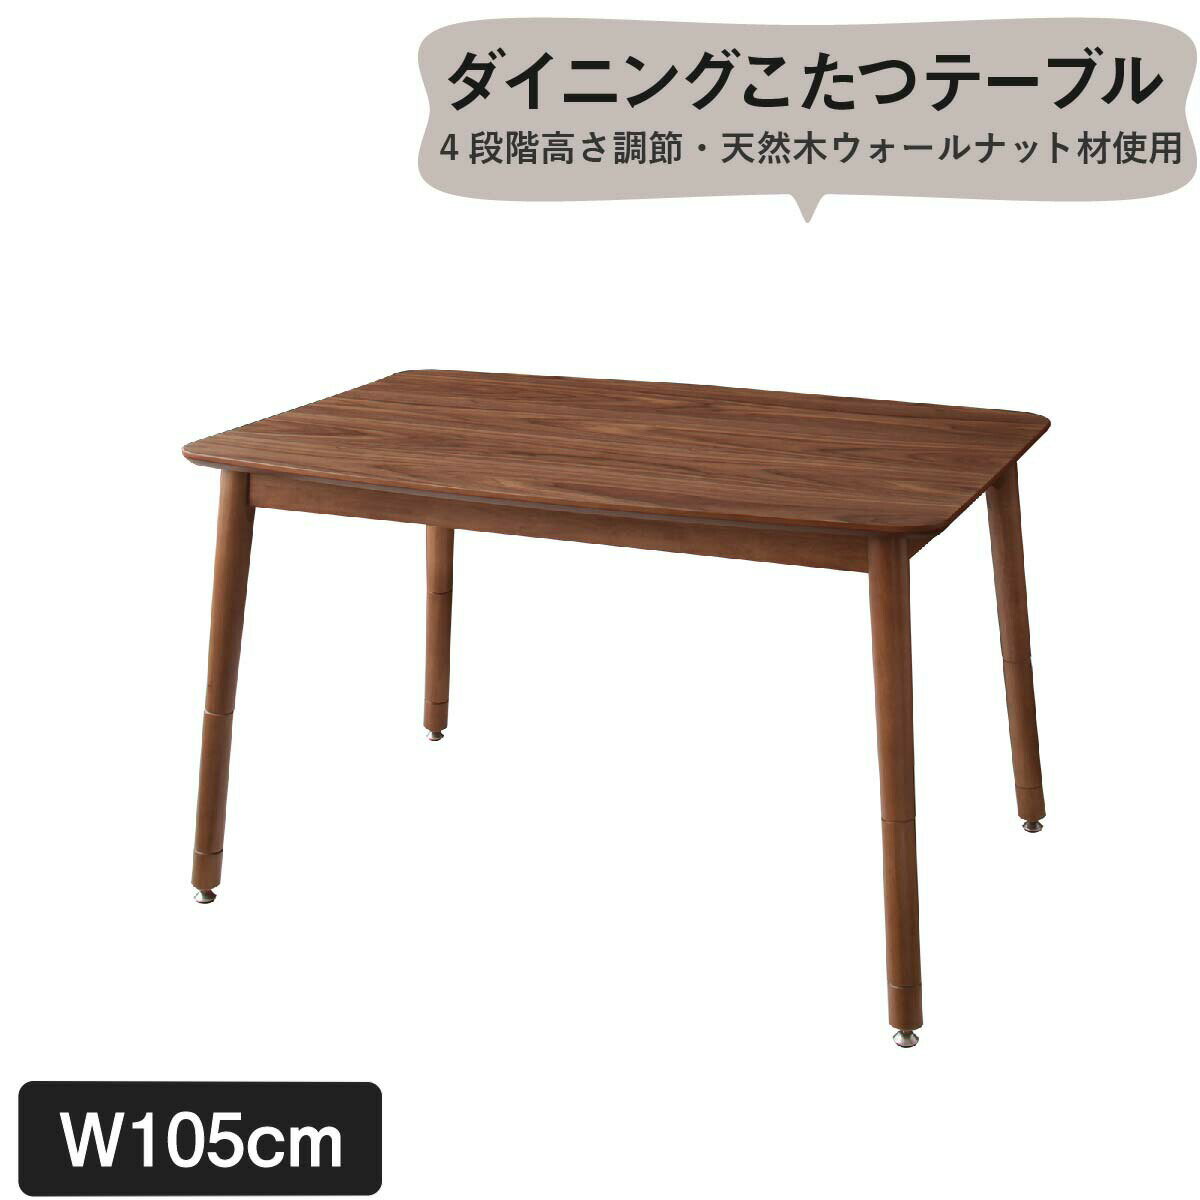 ダイニングテーブル こたつもソファも高さ調節できるリビングダイニングシリーズ ダイニングテーブル単品 W105